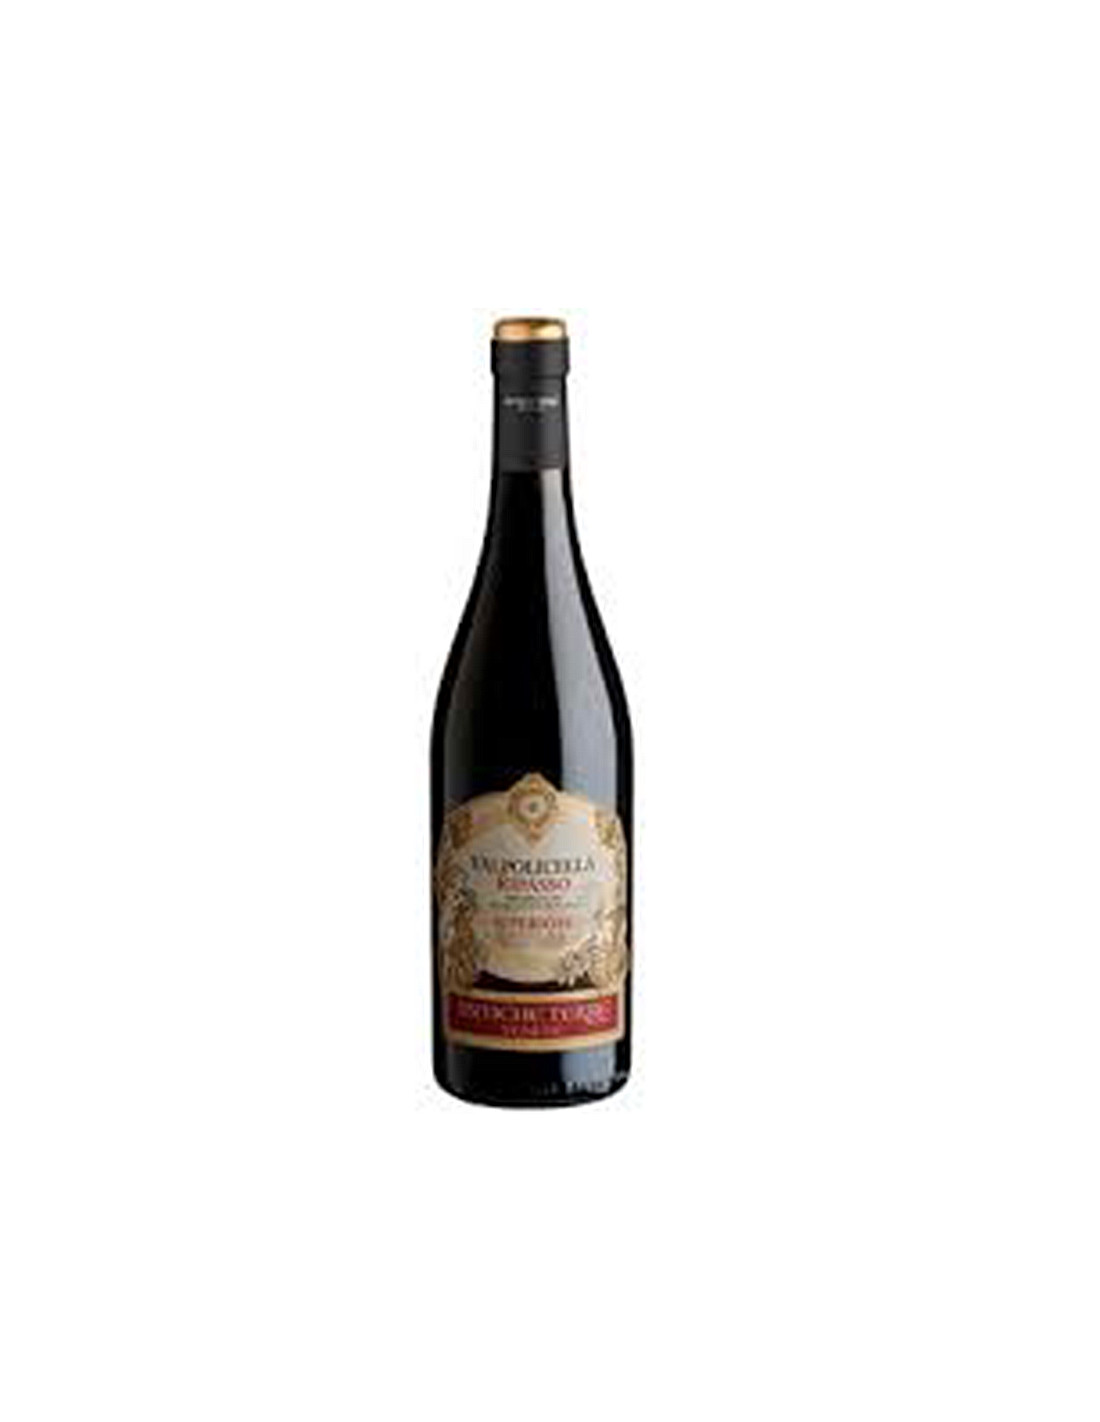 fup leje aritmetik Antich Terrre, Ripasso - klassisk frugtig og intens italiensk rødvin.